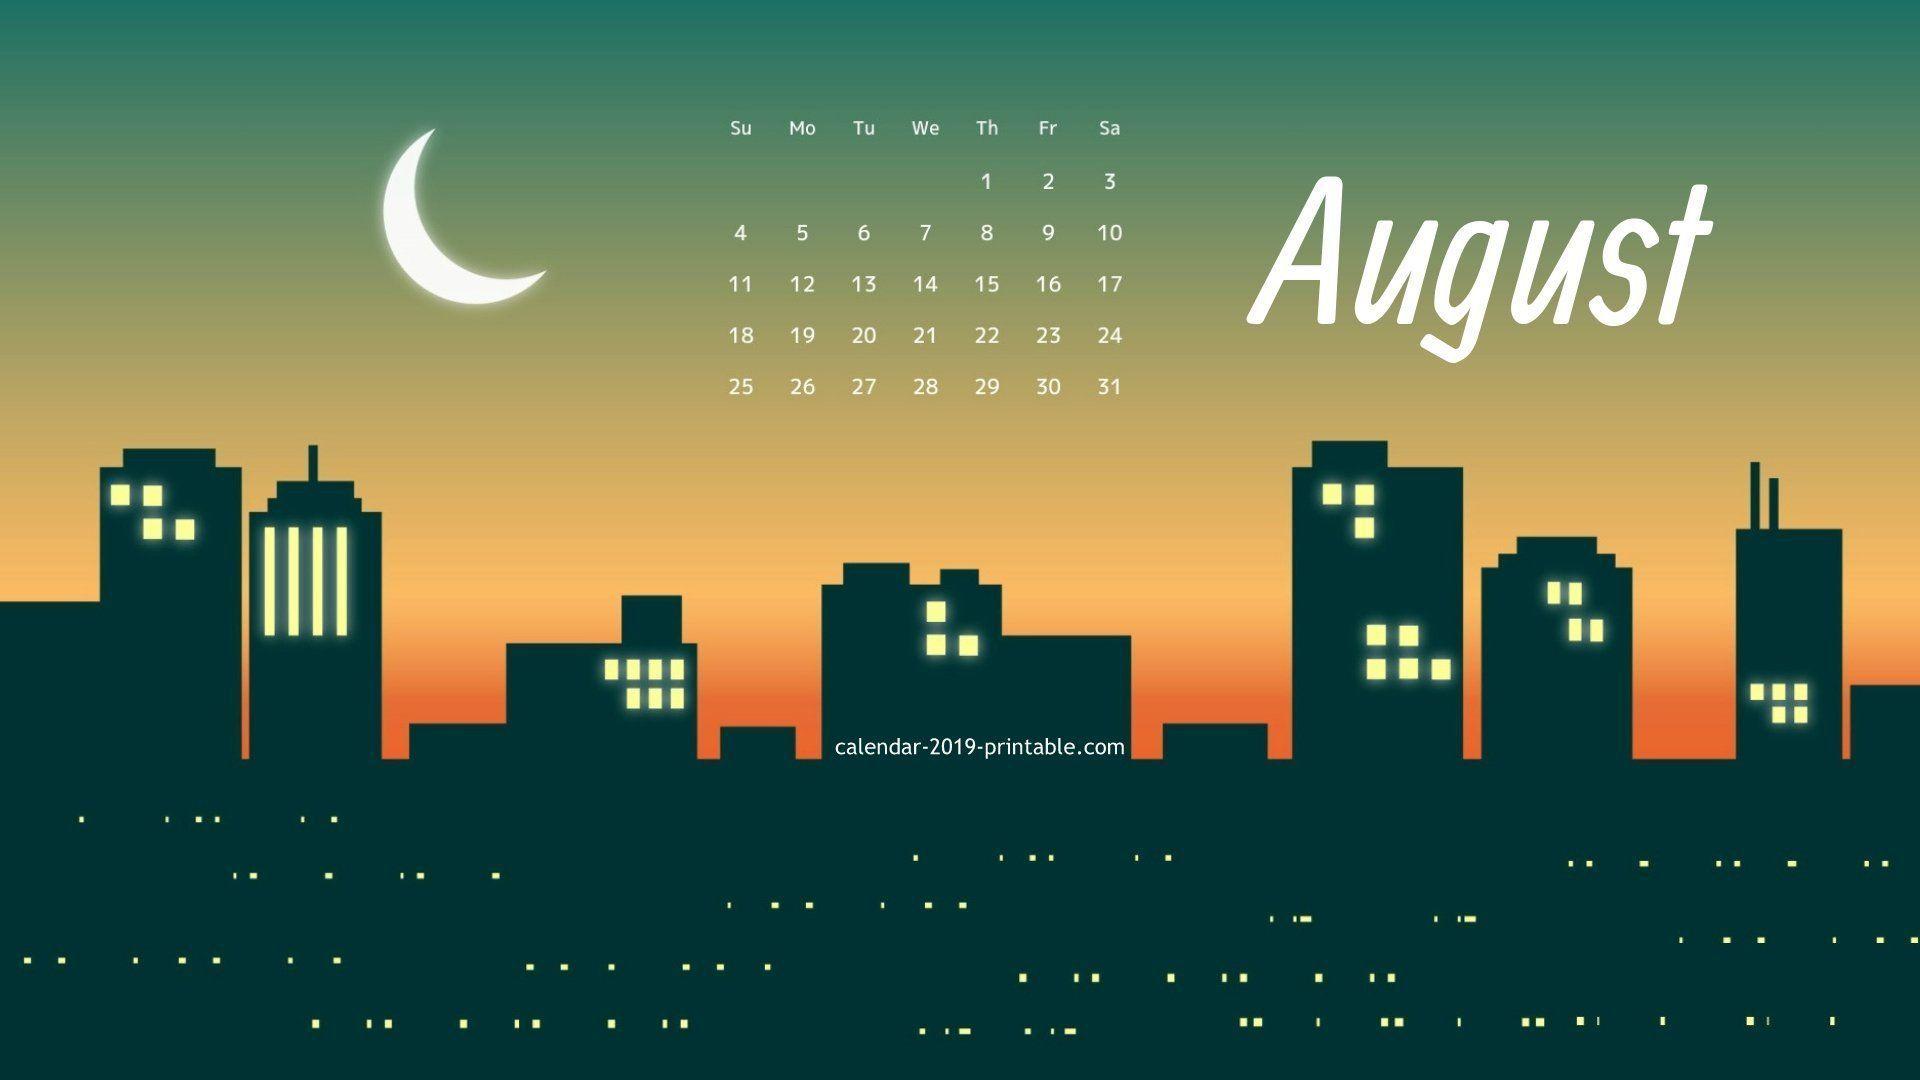 August 2019 Calendar Wallpaper #august #august2019 calendar